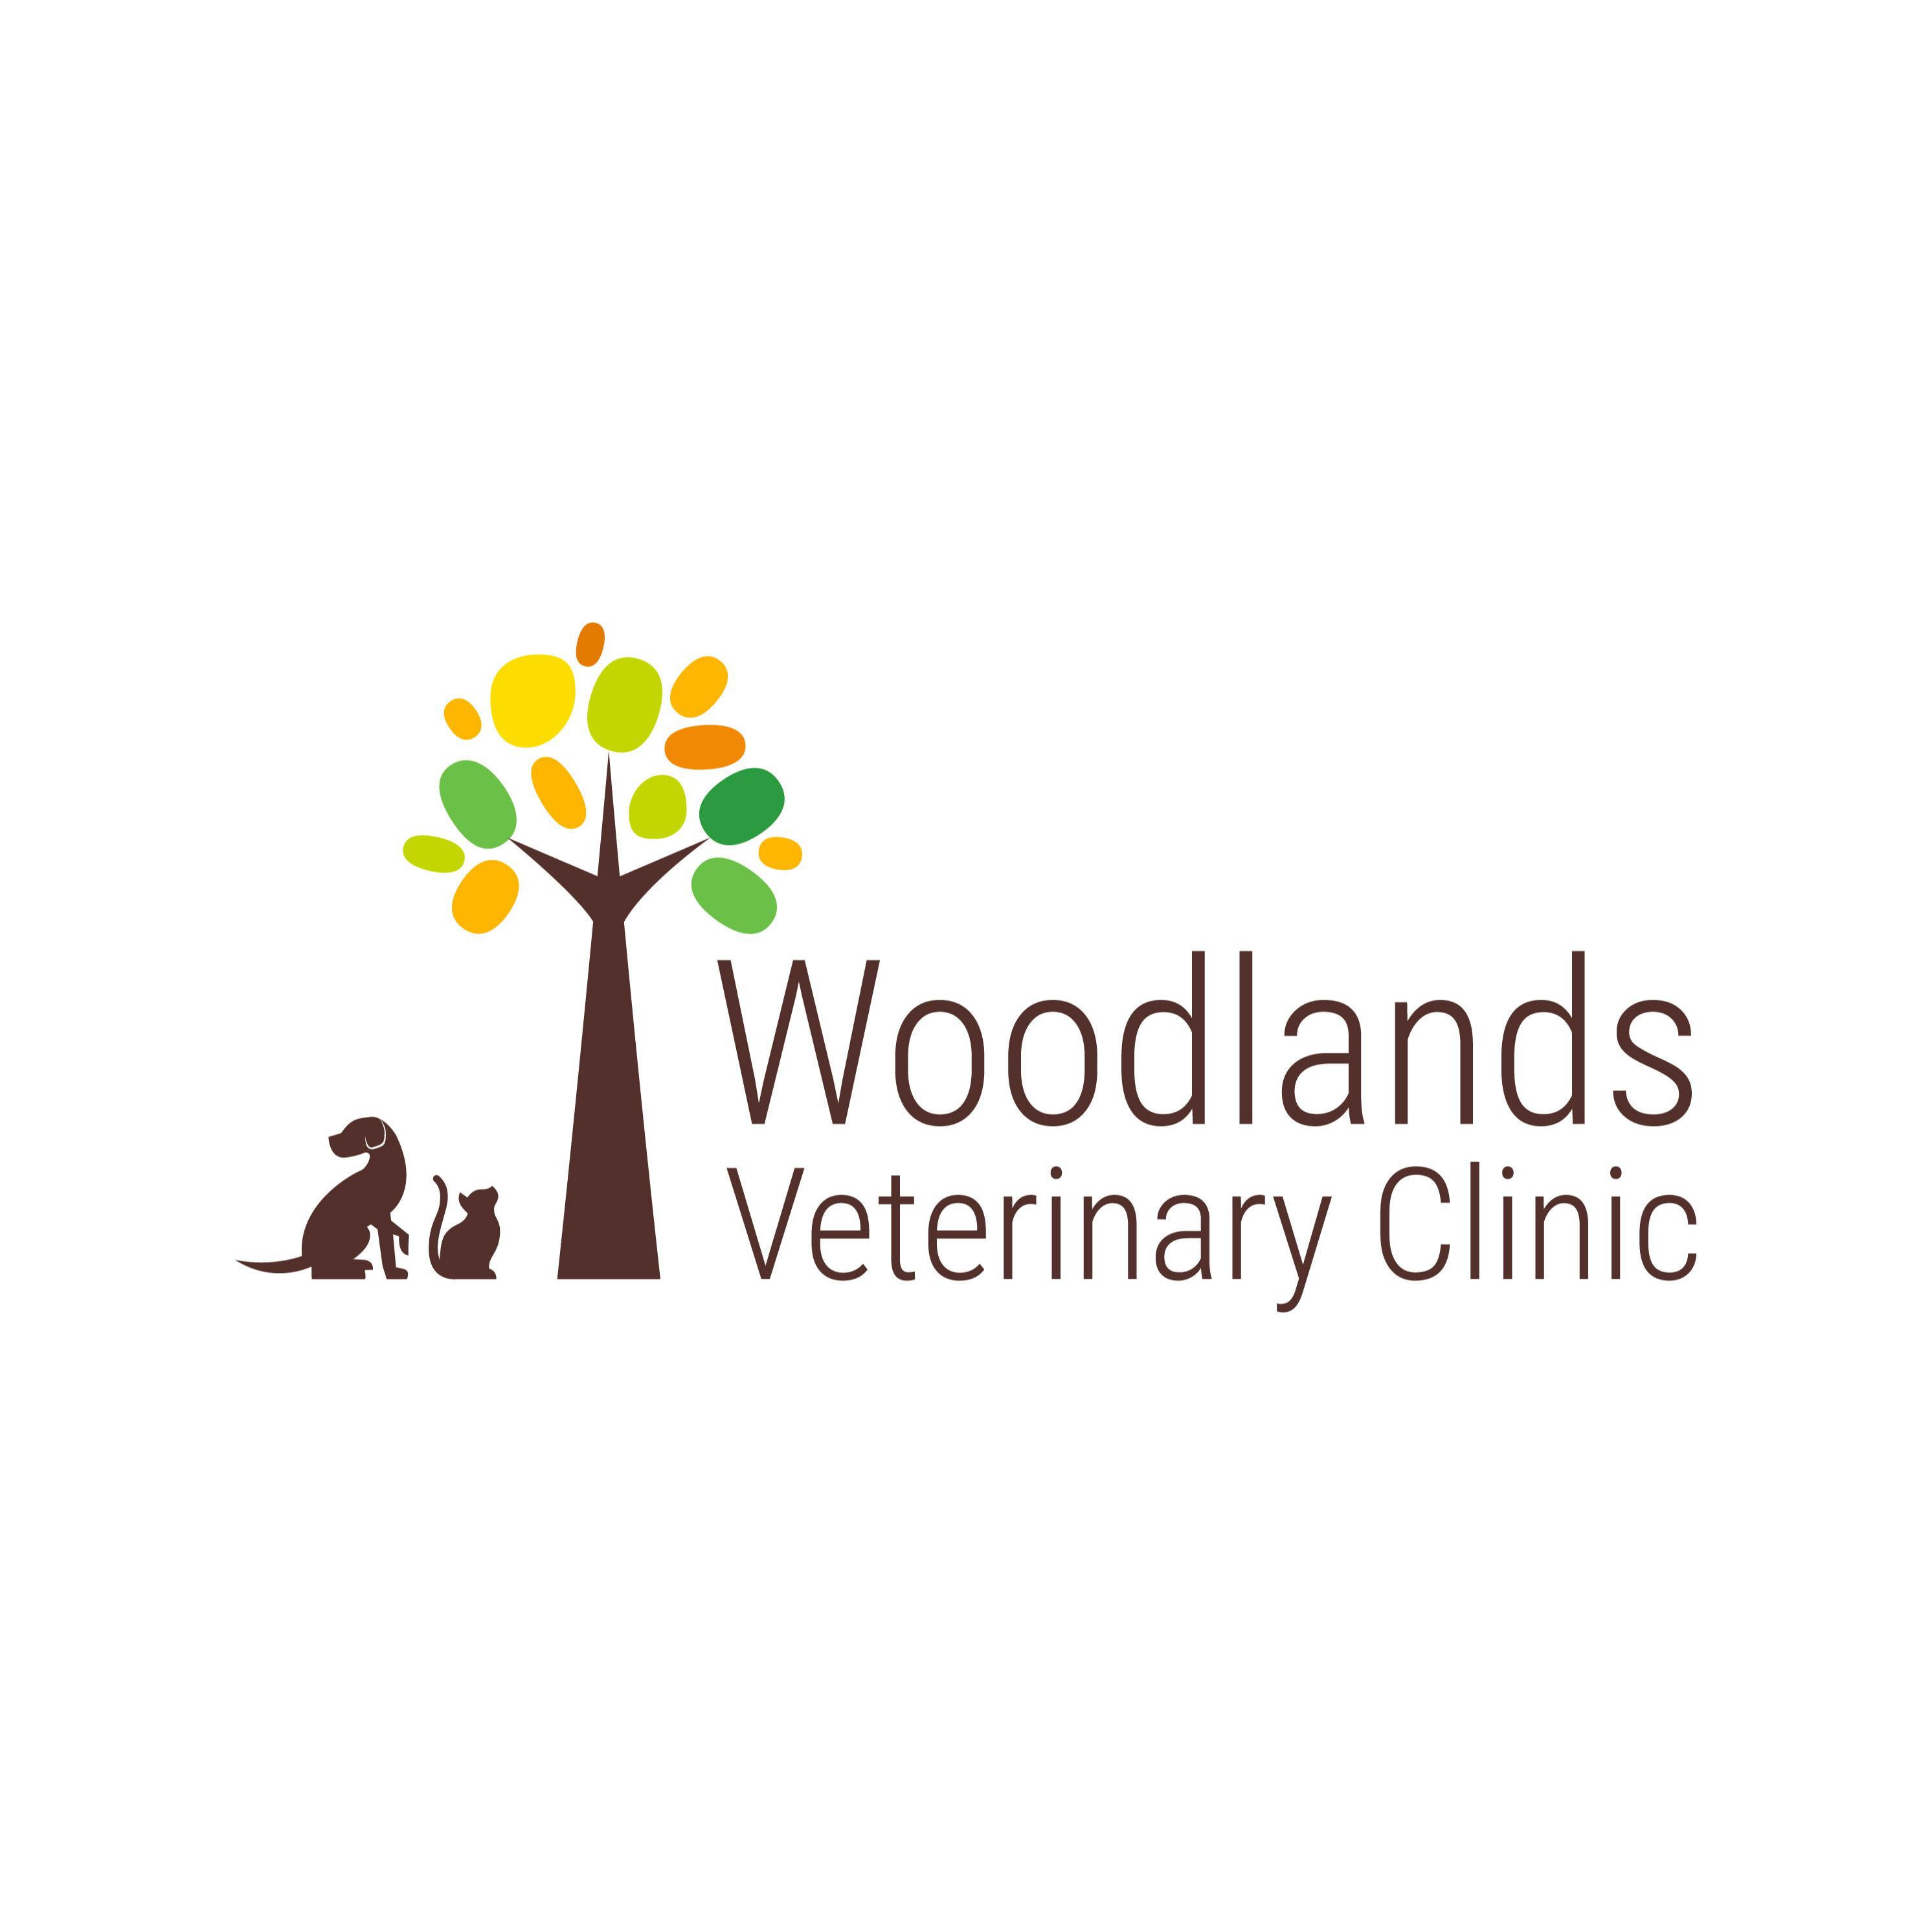 Woodlands Veterinary Clinic - Brockworth Logo